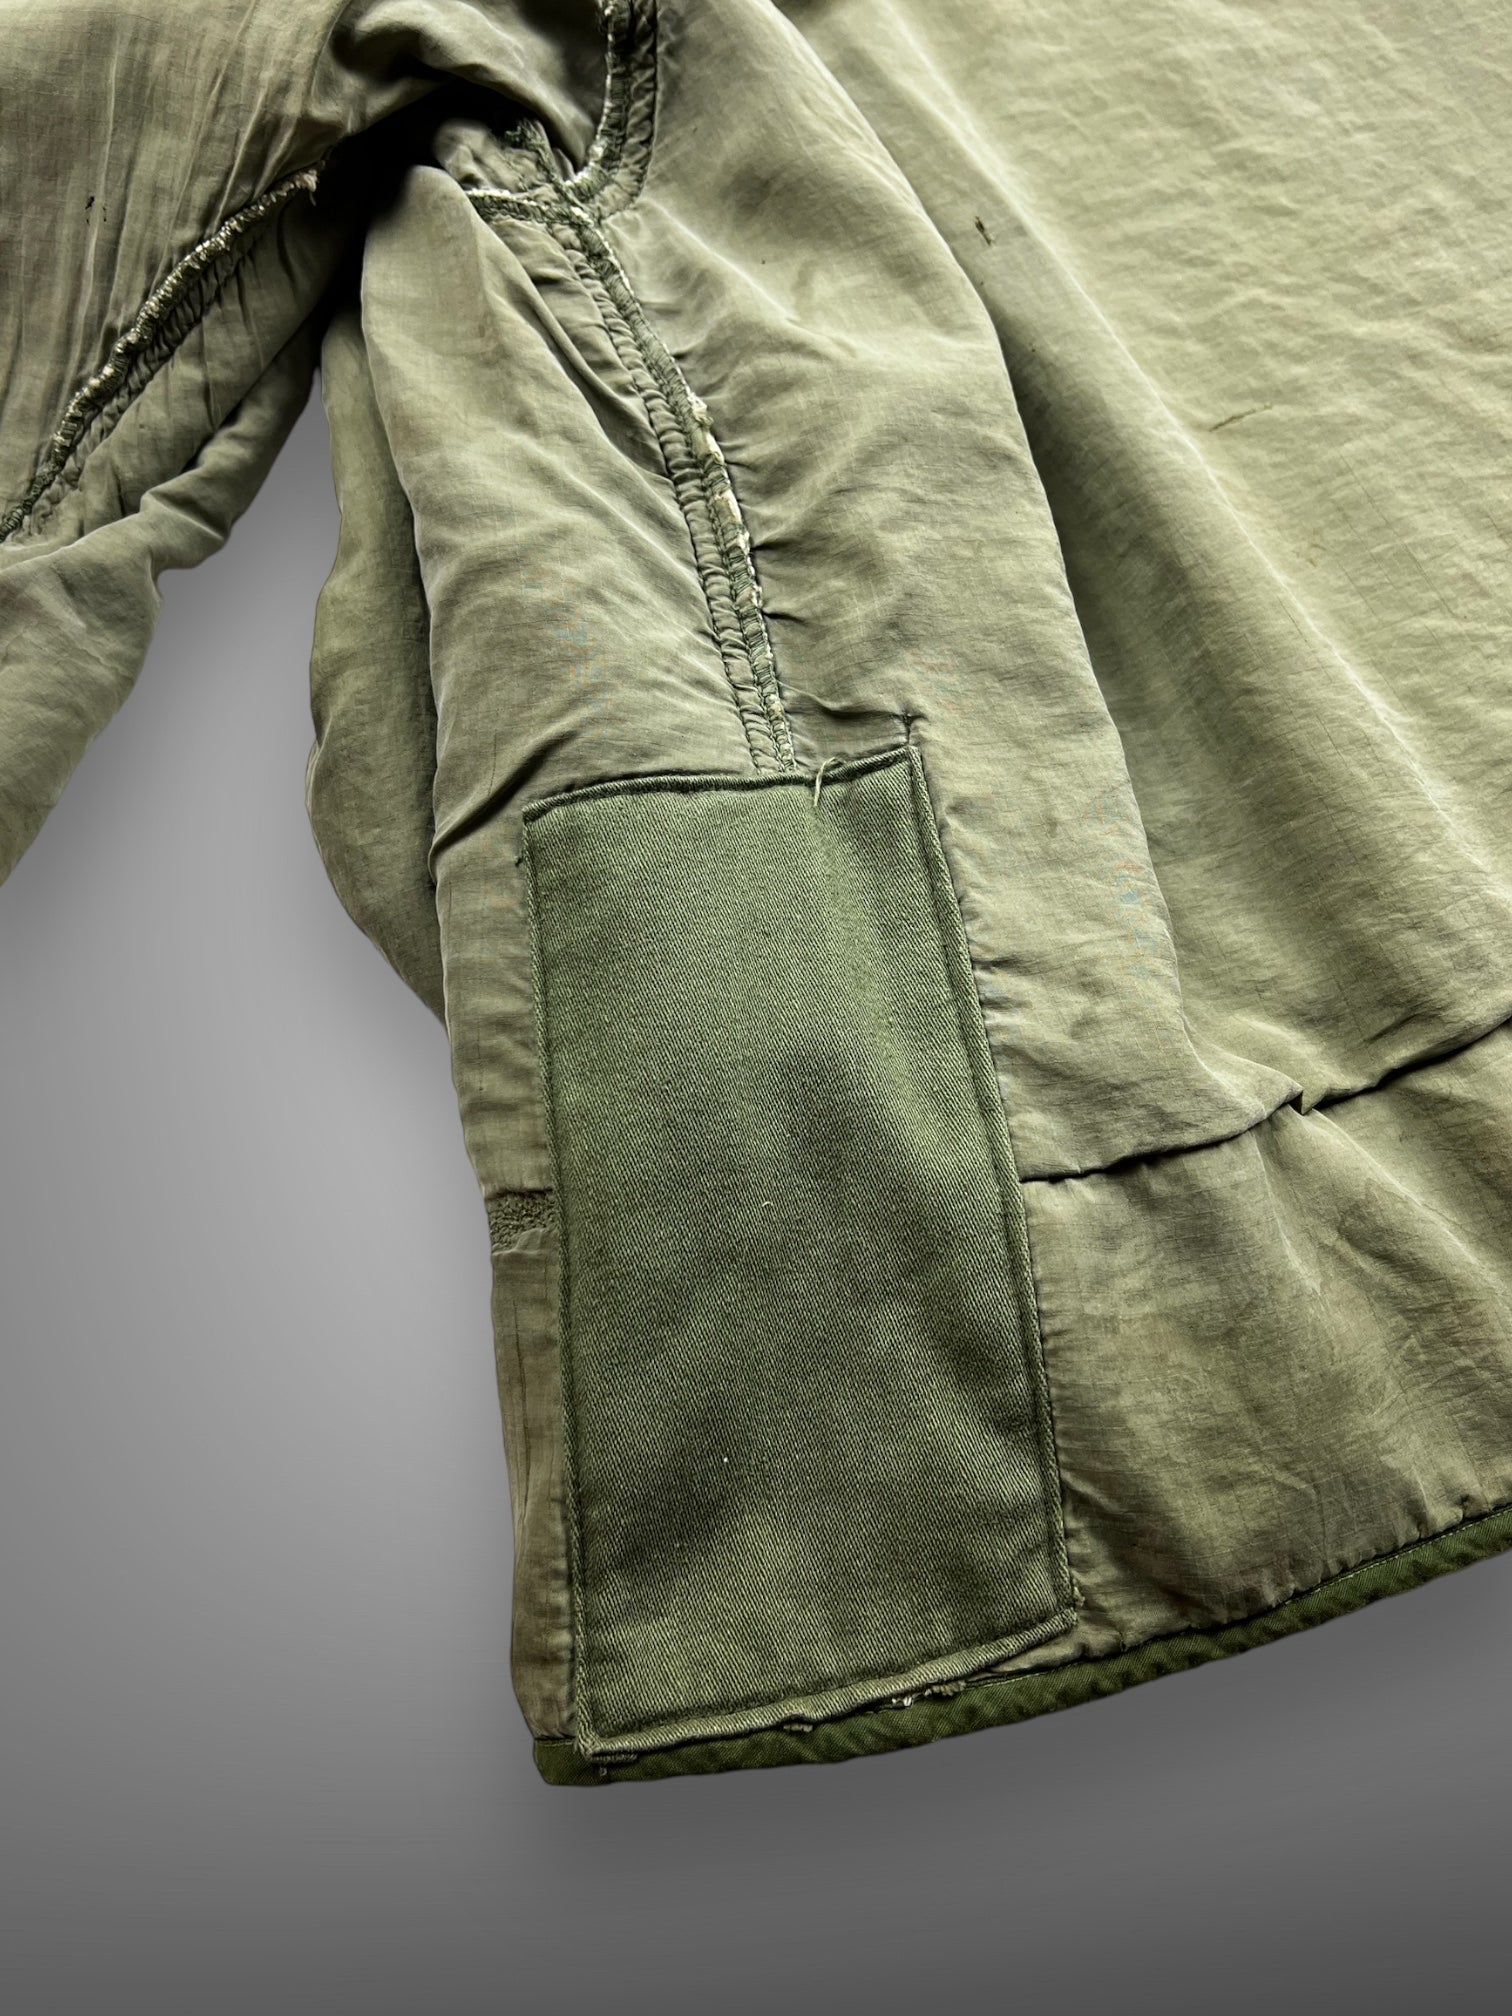 Military pile liner jacket L